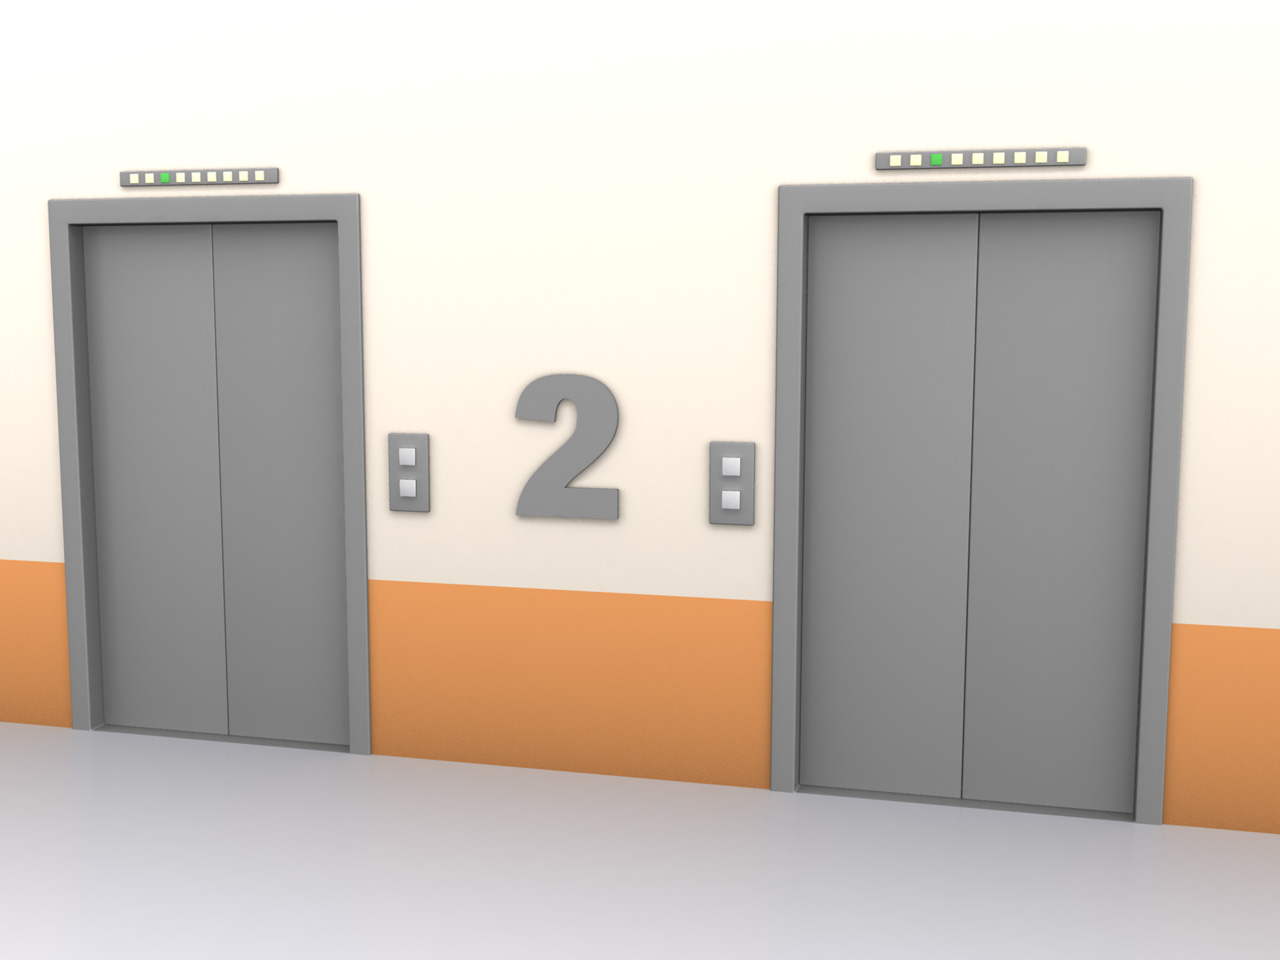 12-6 Figur 1: Det må være minimum 1,5 m fri bredde i korridor og svalgang.